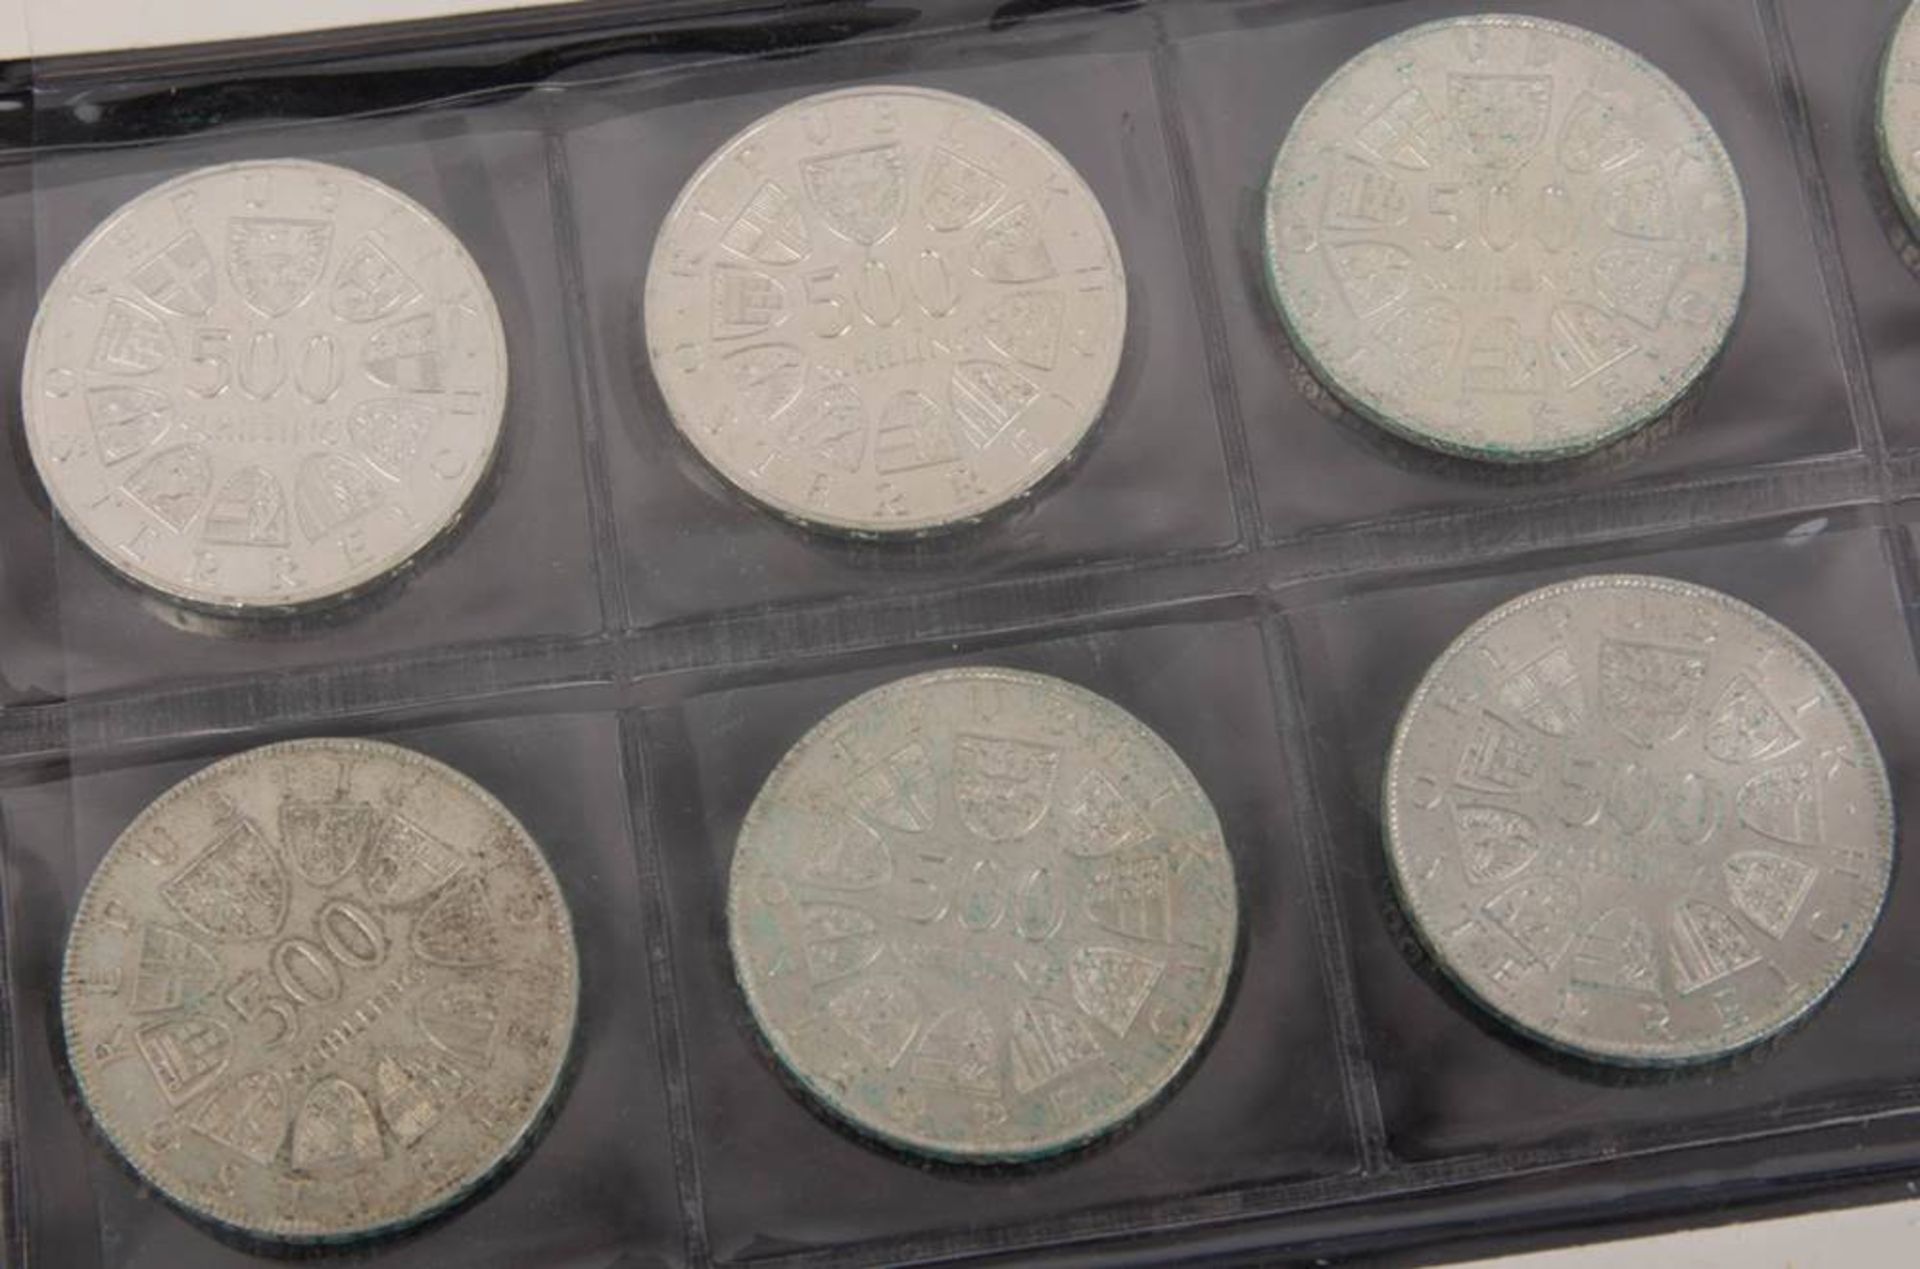 Österreich: Silbermünzen 2. Republik 12x500 ATS. - Bild 2 aus 5